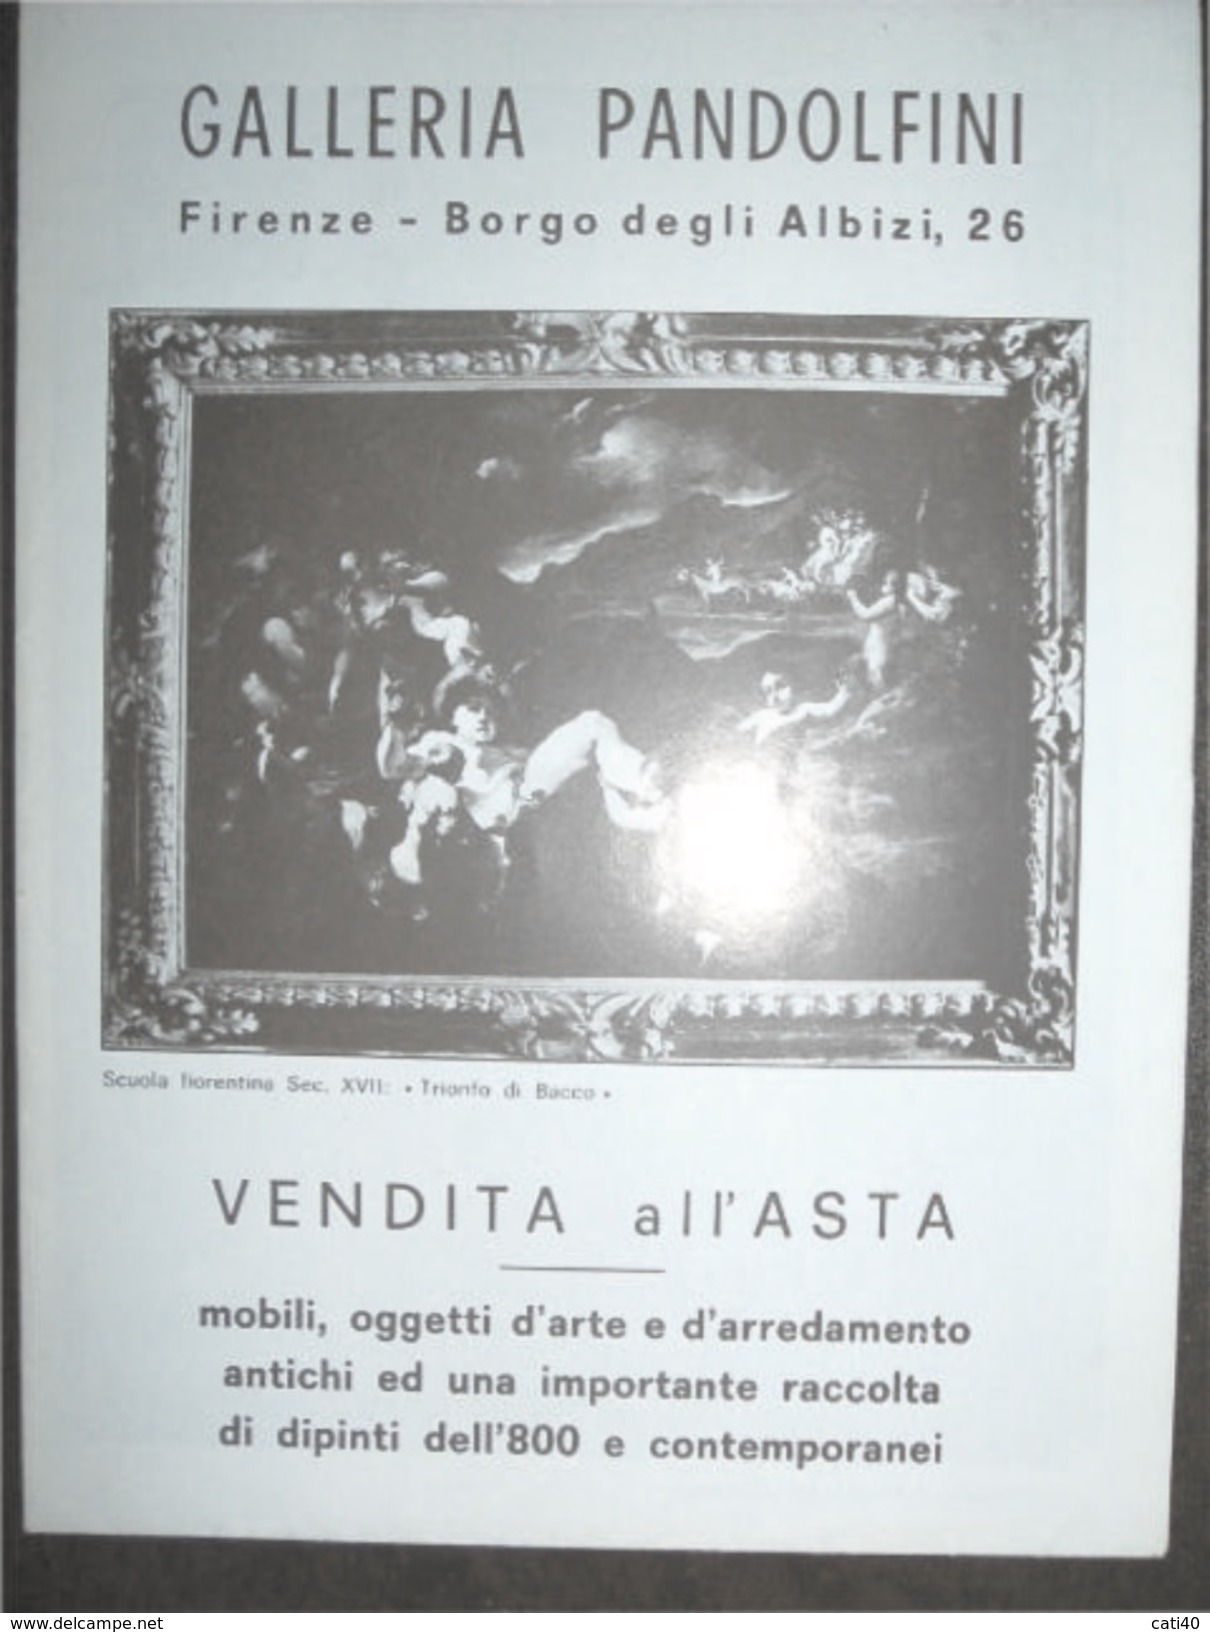 CATALOGO VENDITA ALL'ASTA DALLERUA PANDOLFINI FIRENZE  10-16/4/1972 DI MOBILI OGGETTI D'ARTE E DIPINTI... - Scientific Texts